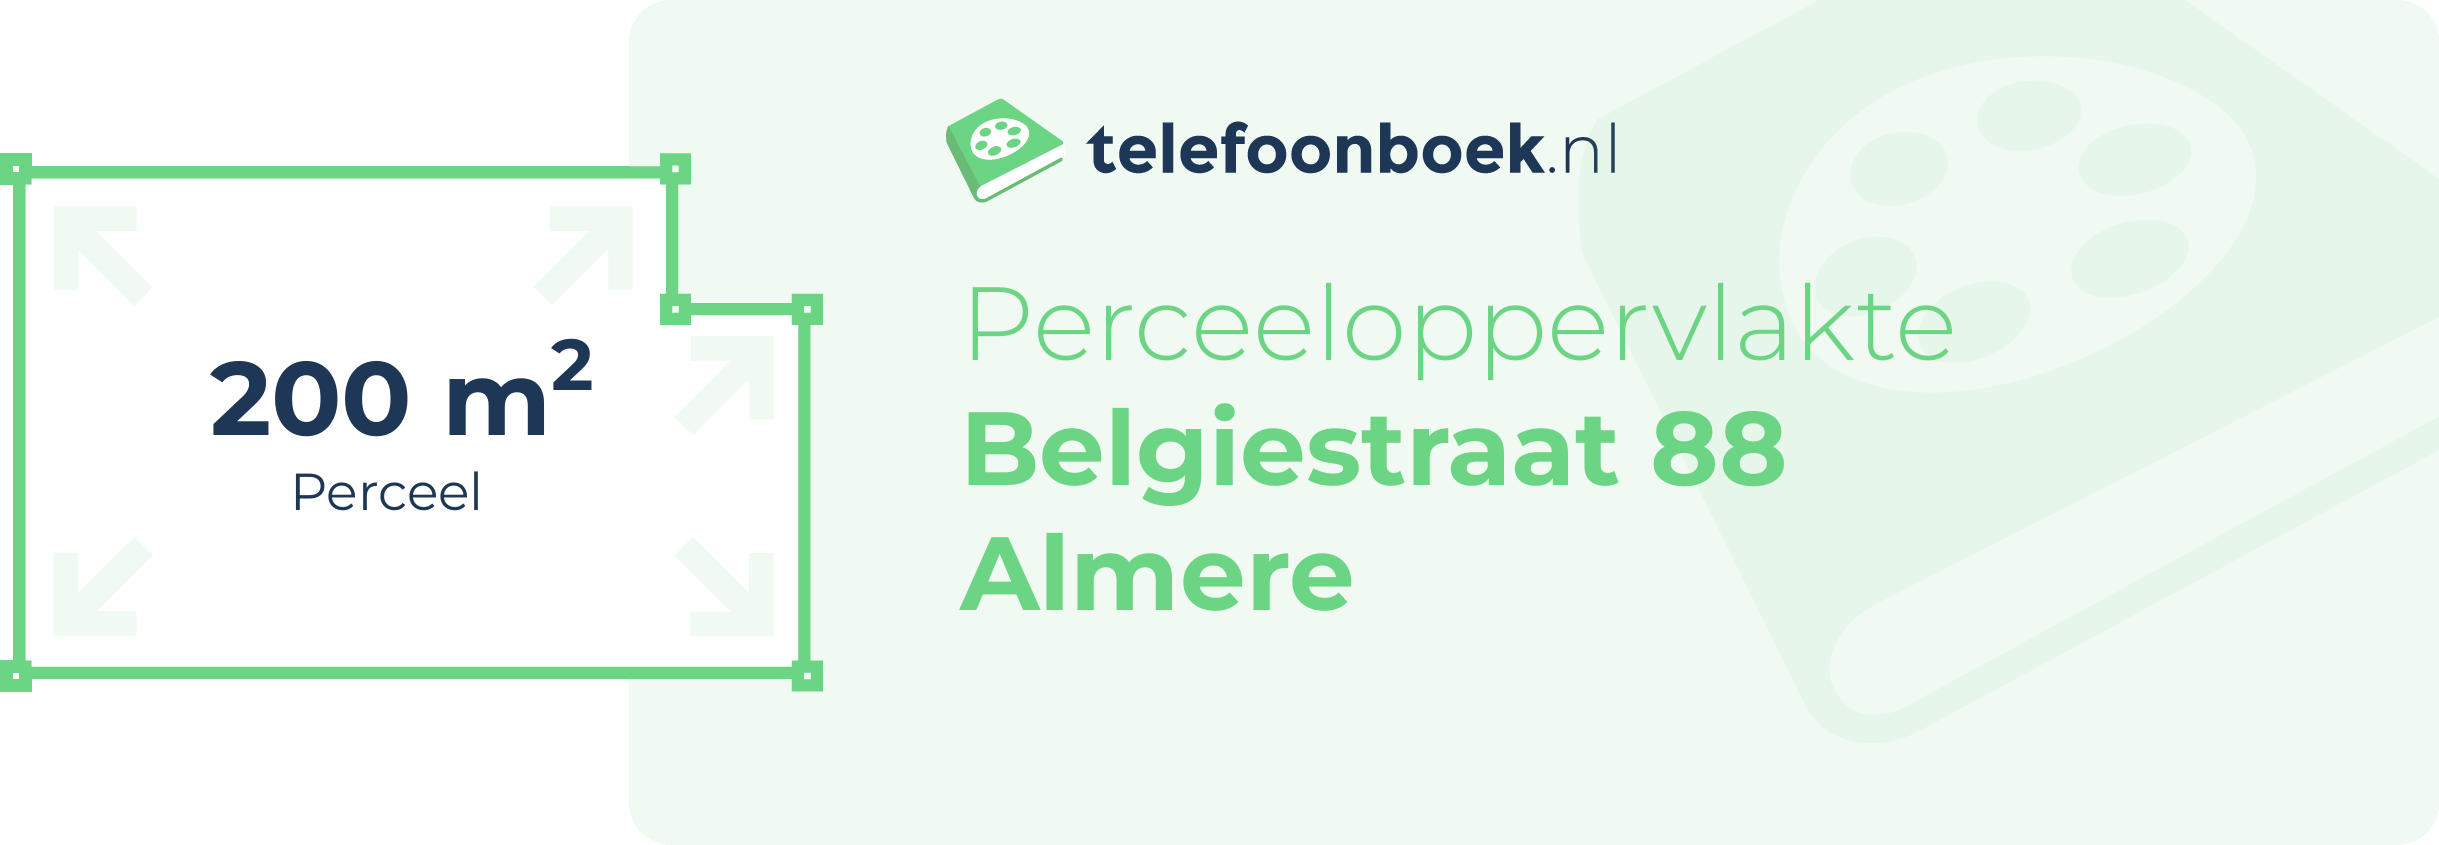 Perceeloppervlakte Belgiestraat 88 Almere